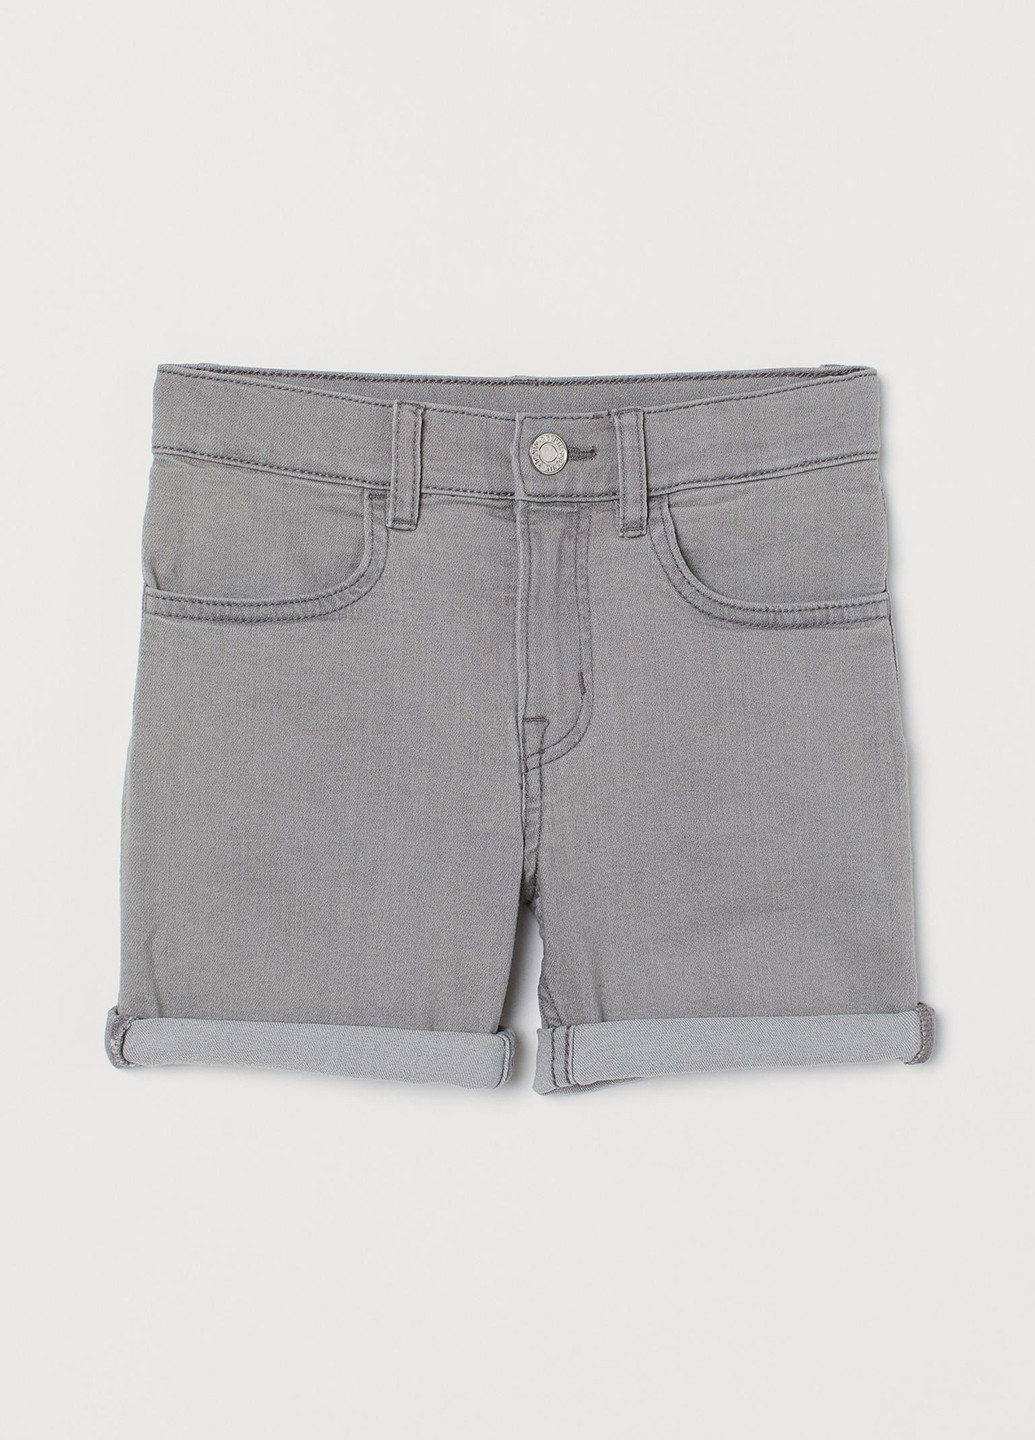 Шорты H&M однотонные серые джинсовые хлопок